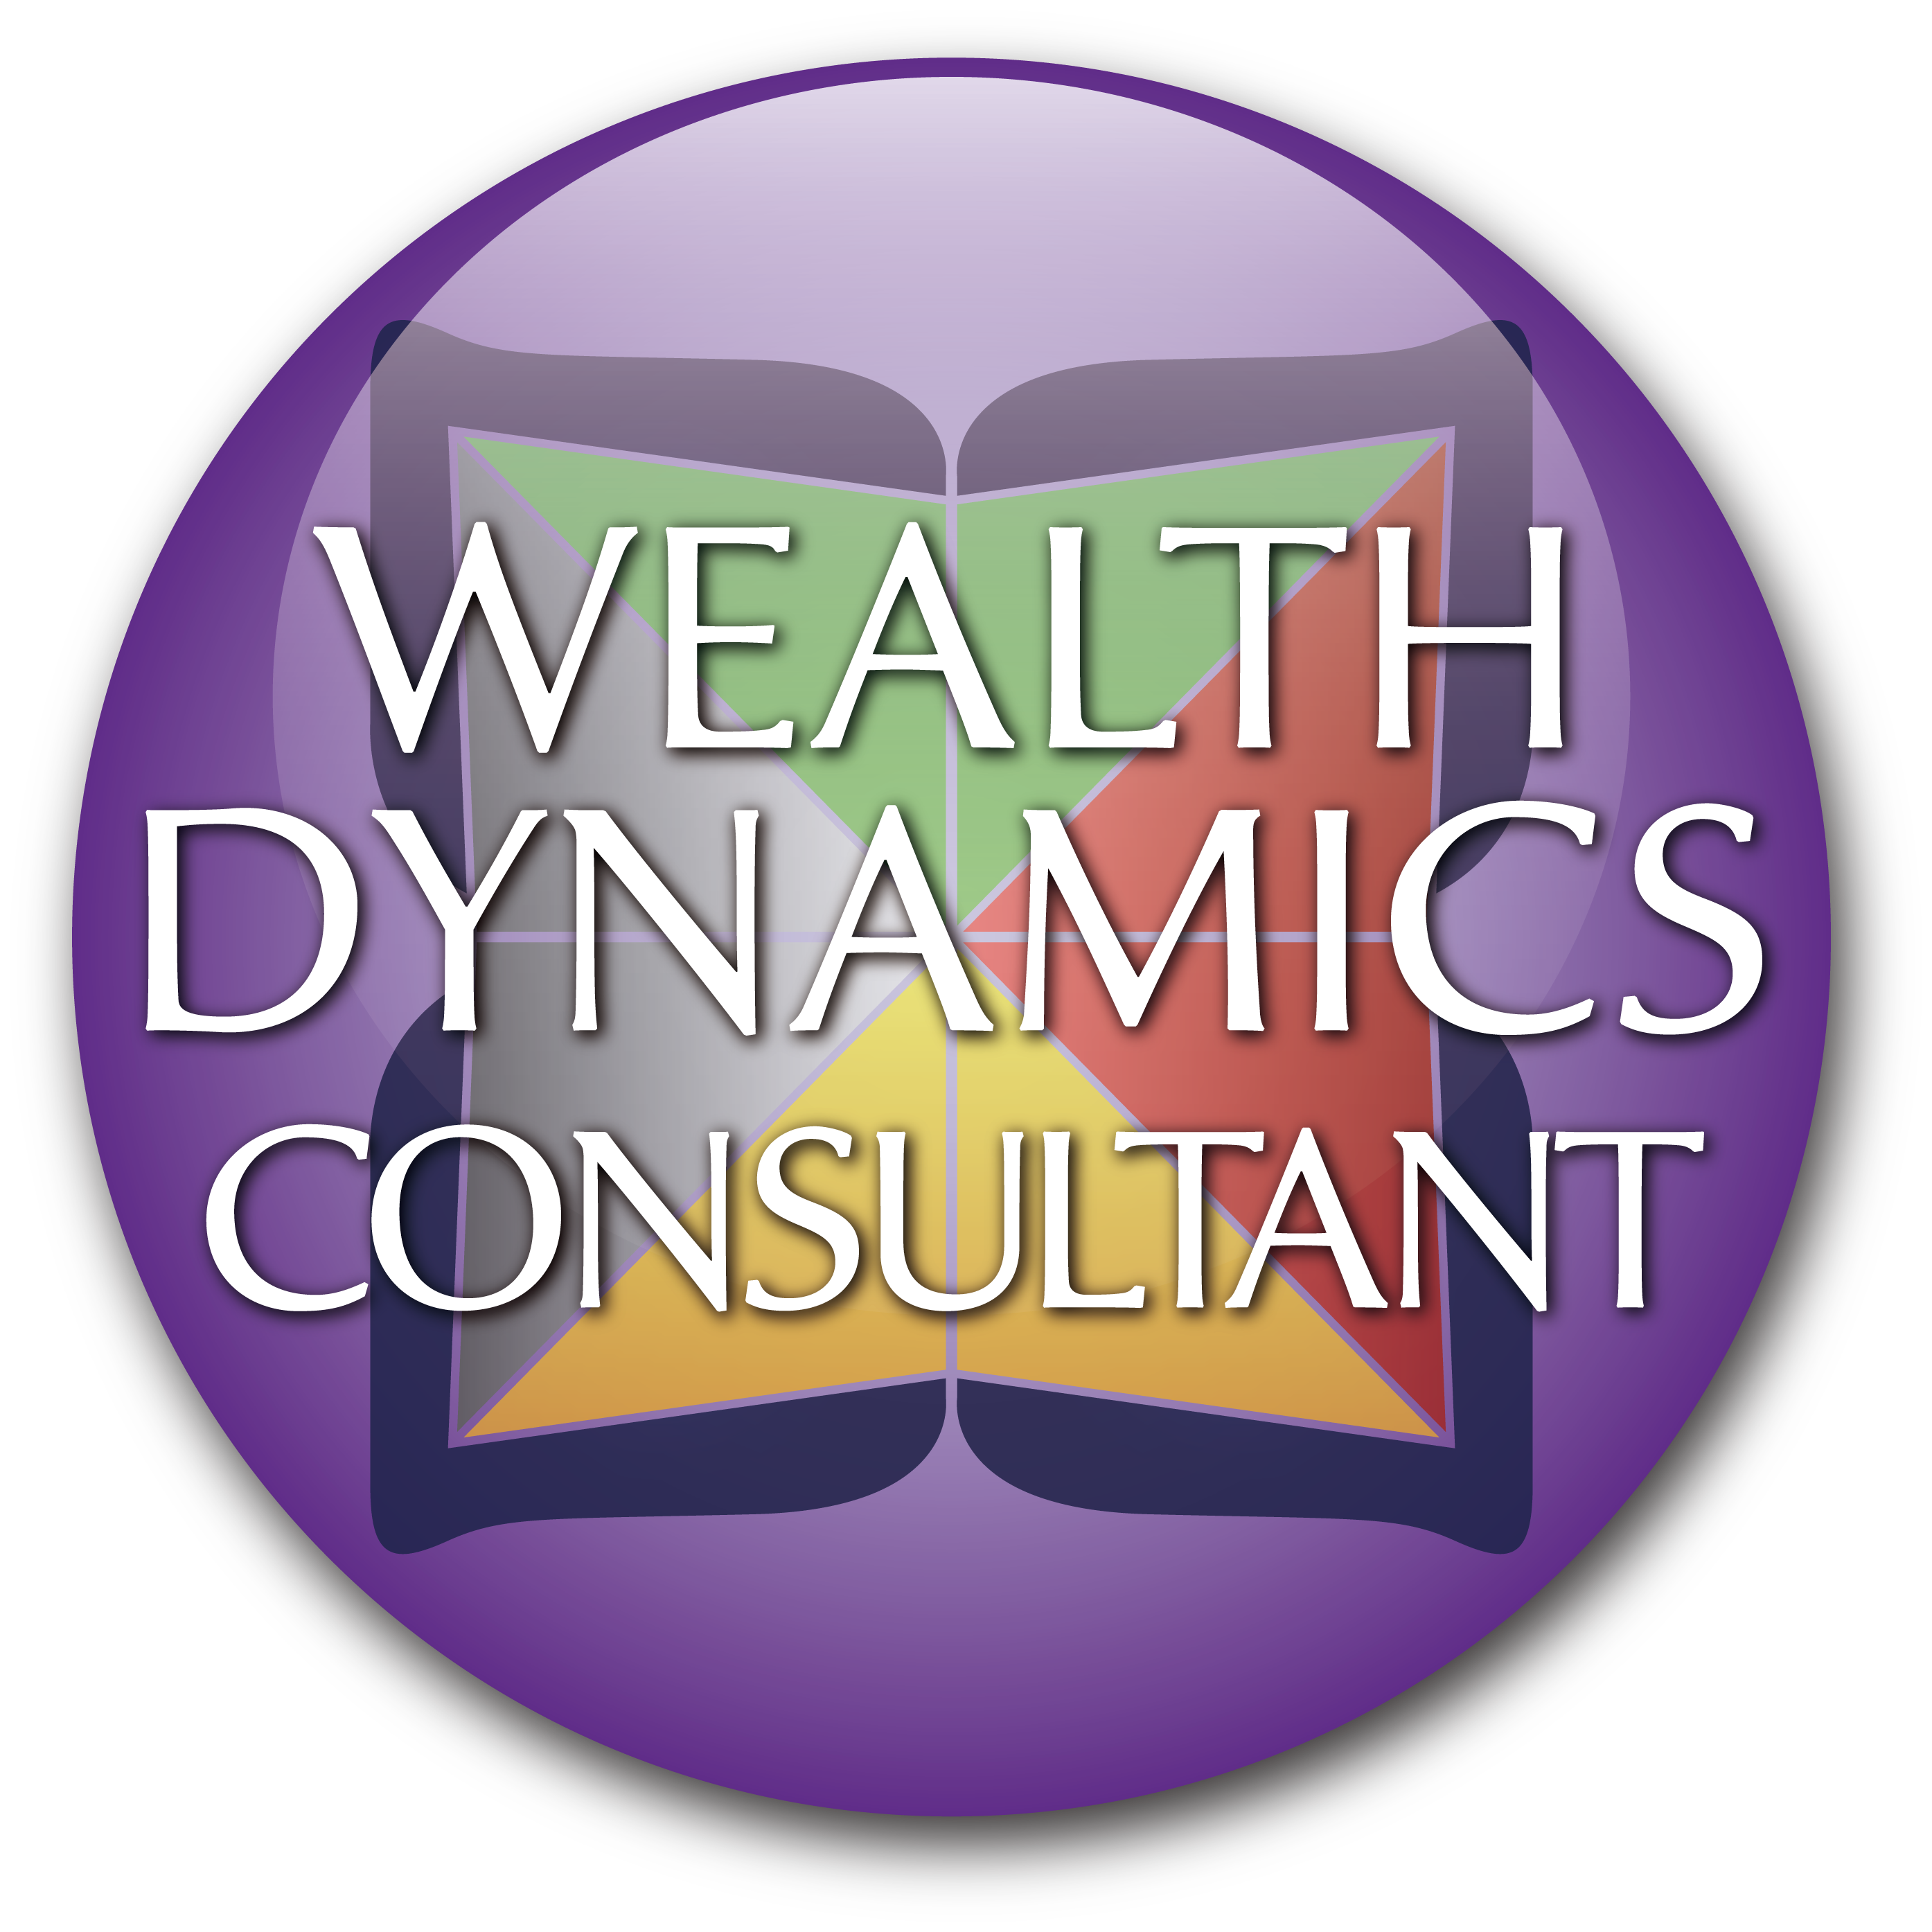 WD consultant logo